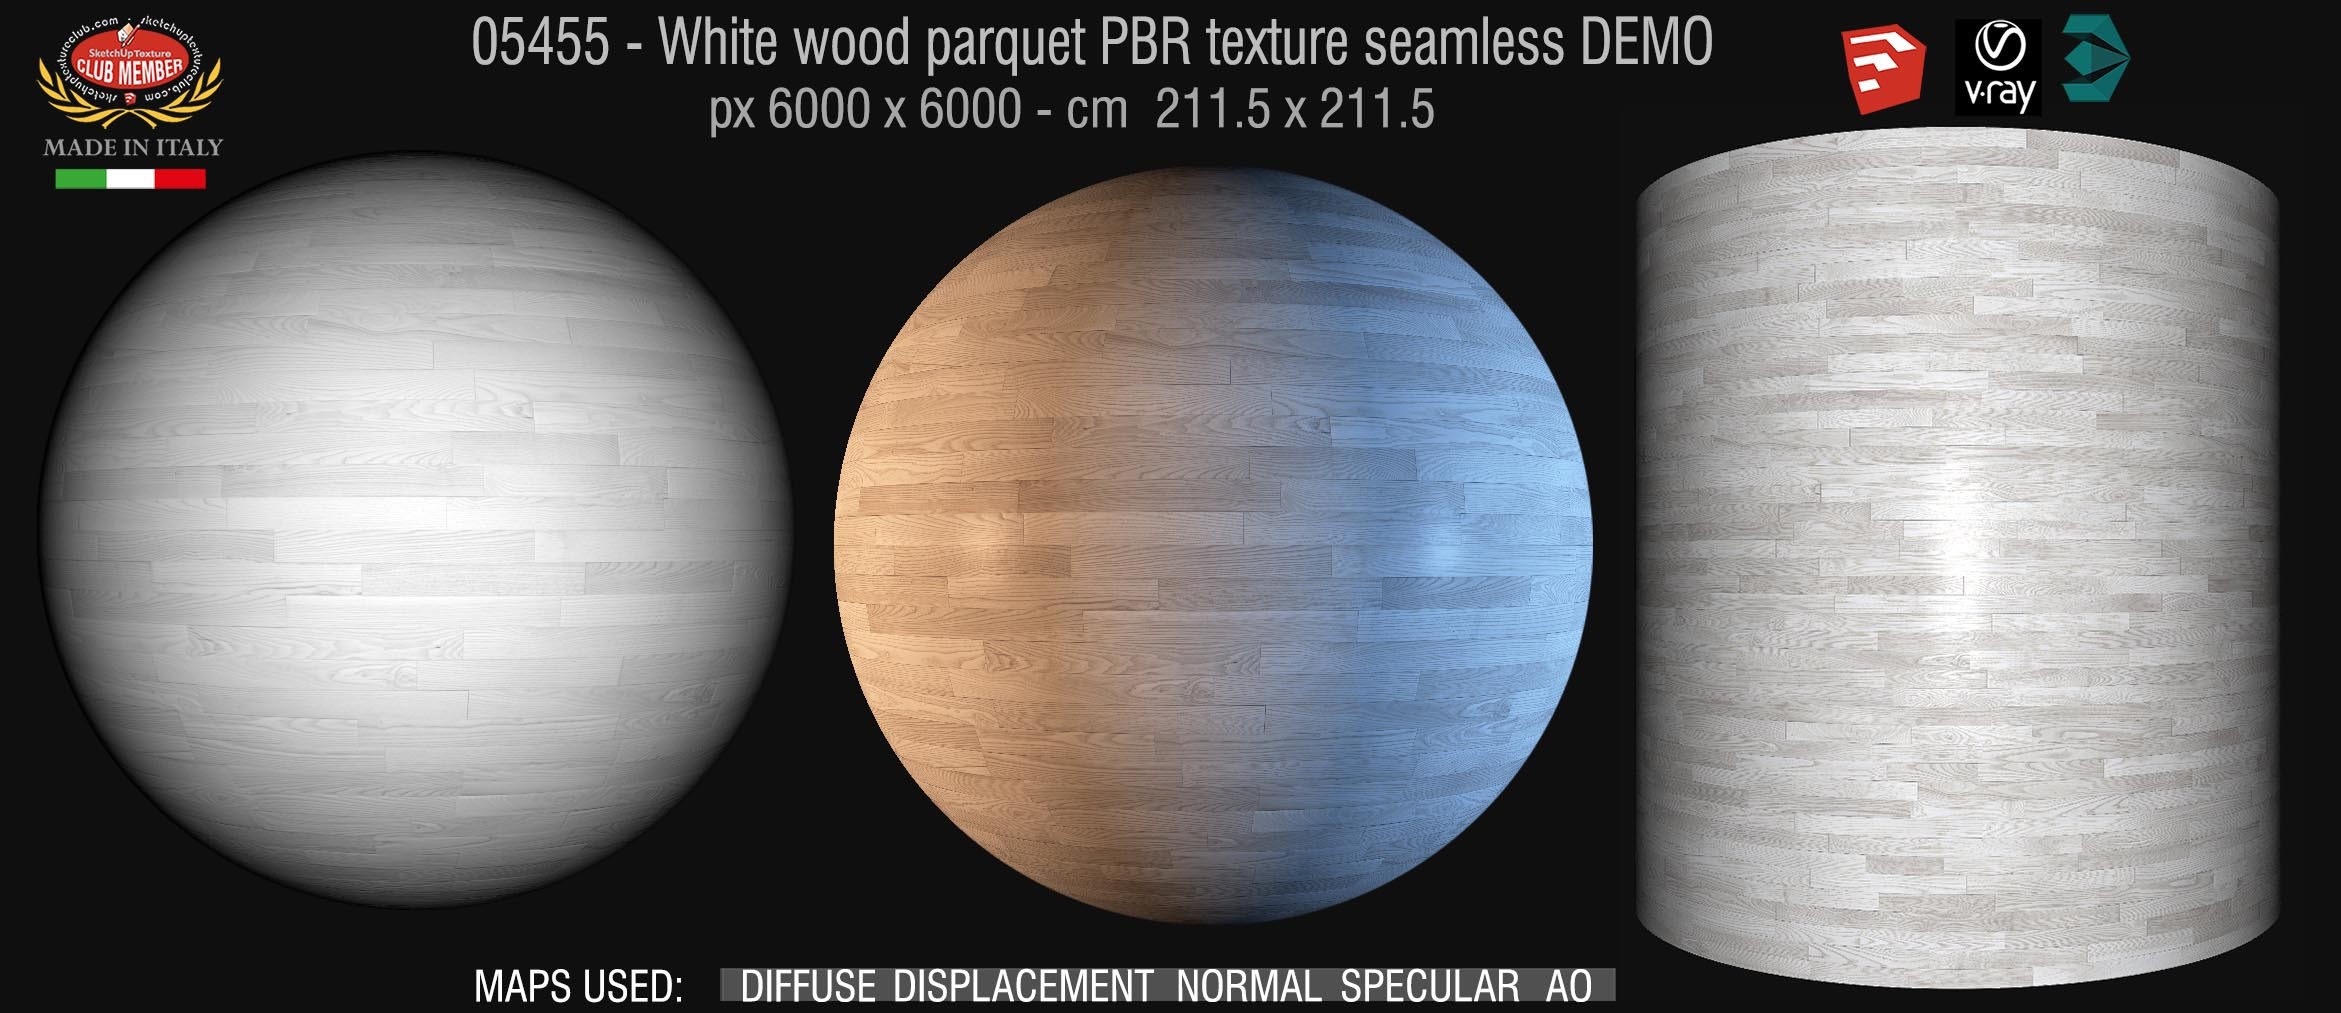 05455 white parquet PBR texture seamless DEMO